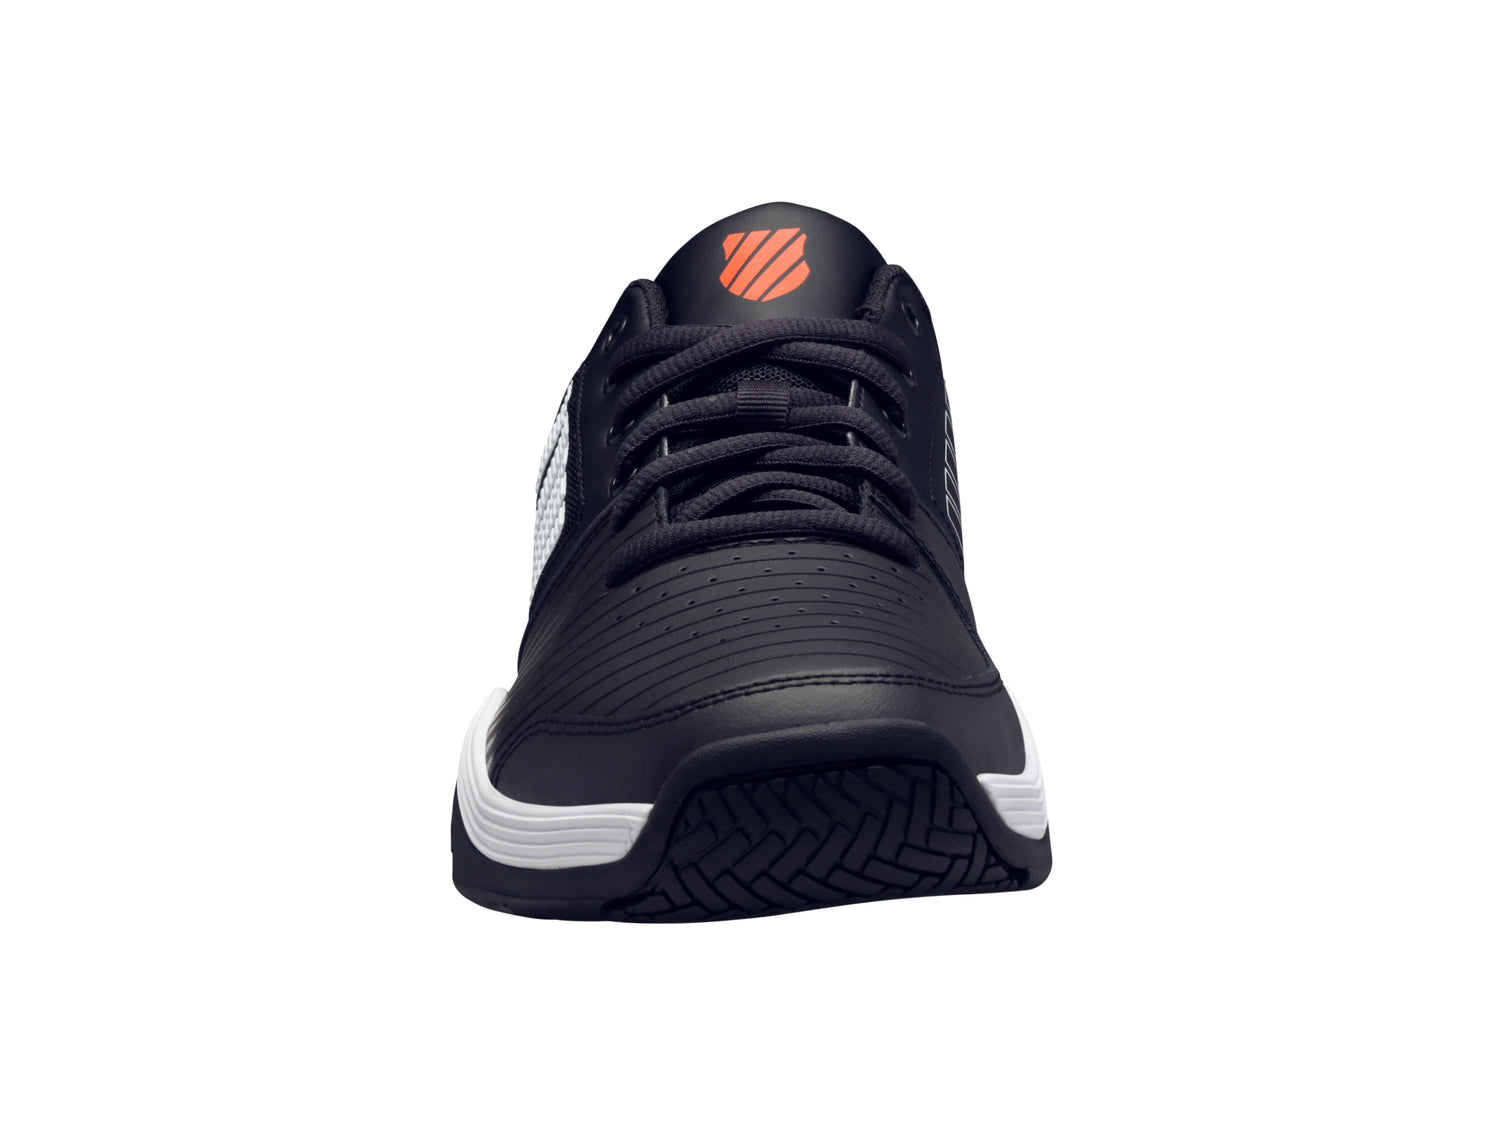 K-Swiss Men's Court Express Tennis Shoes in Jet Black/White/Spicy Orange